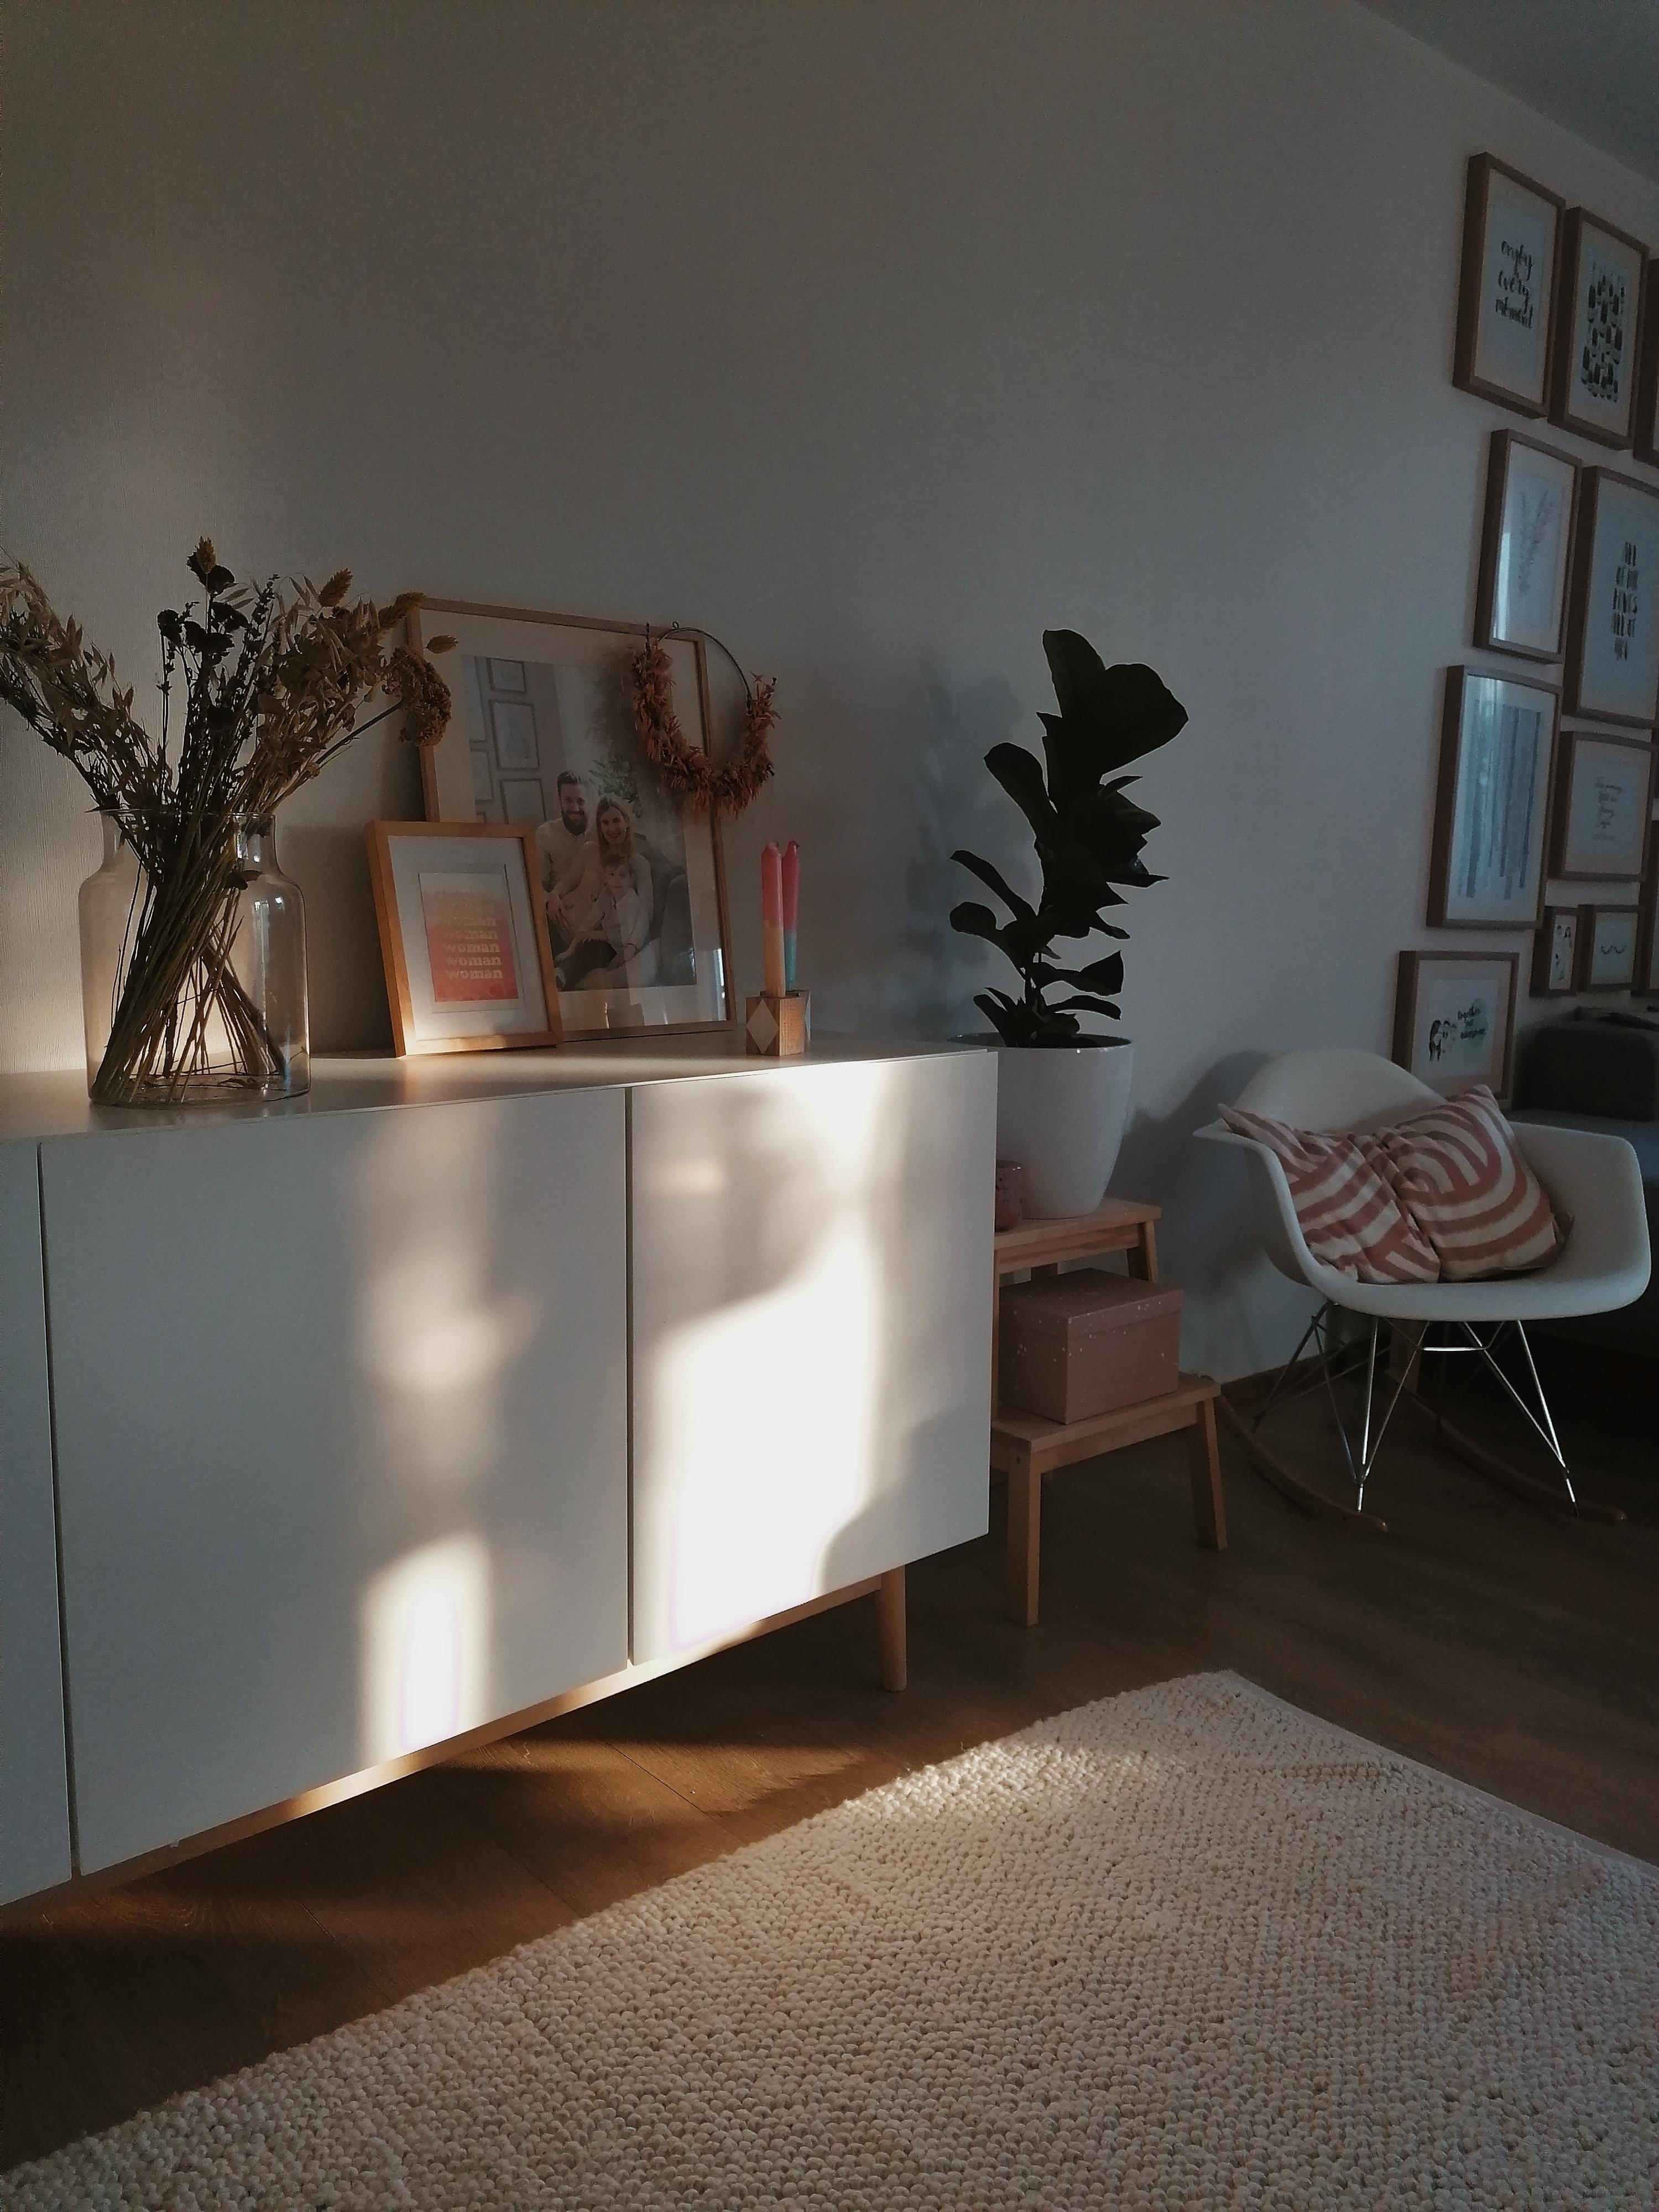 Schattenspiele
#schatten #livingroom #wohnzimmer #sideboard #lounge